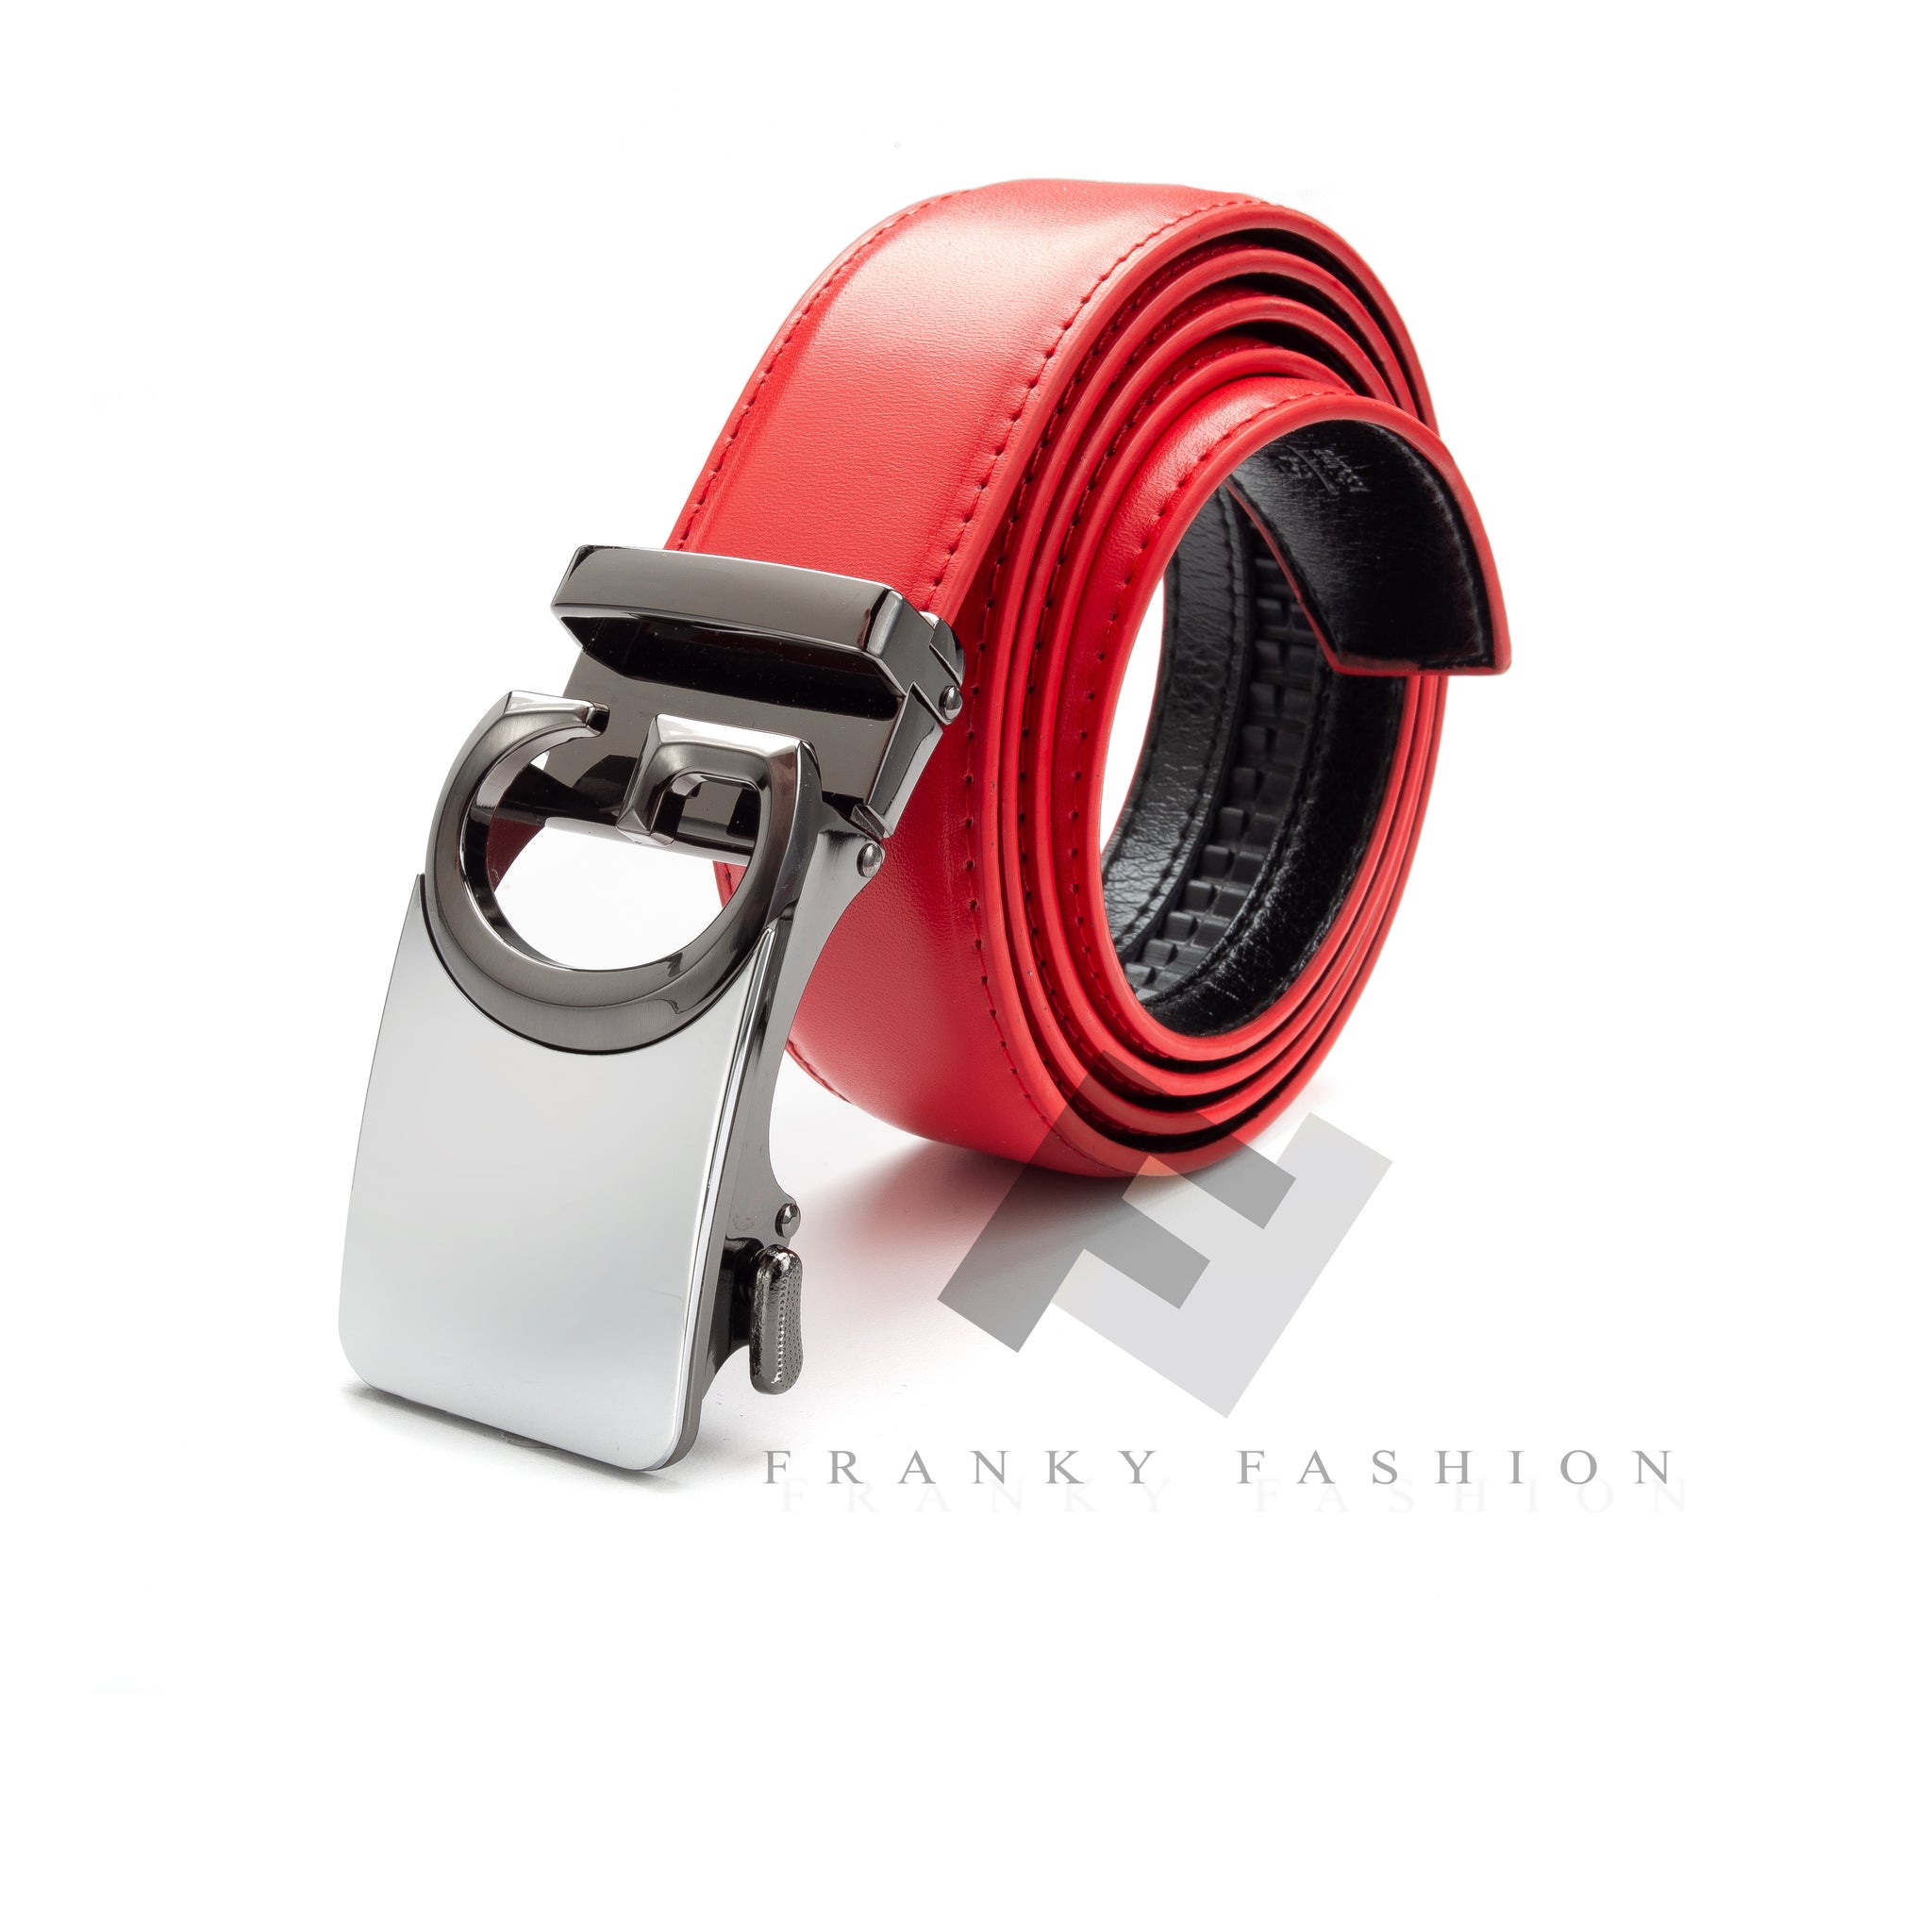 Buy Men's Designer Belt, Black with Red